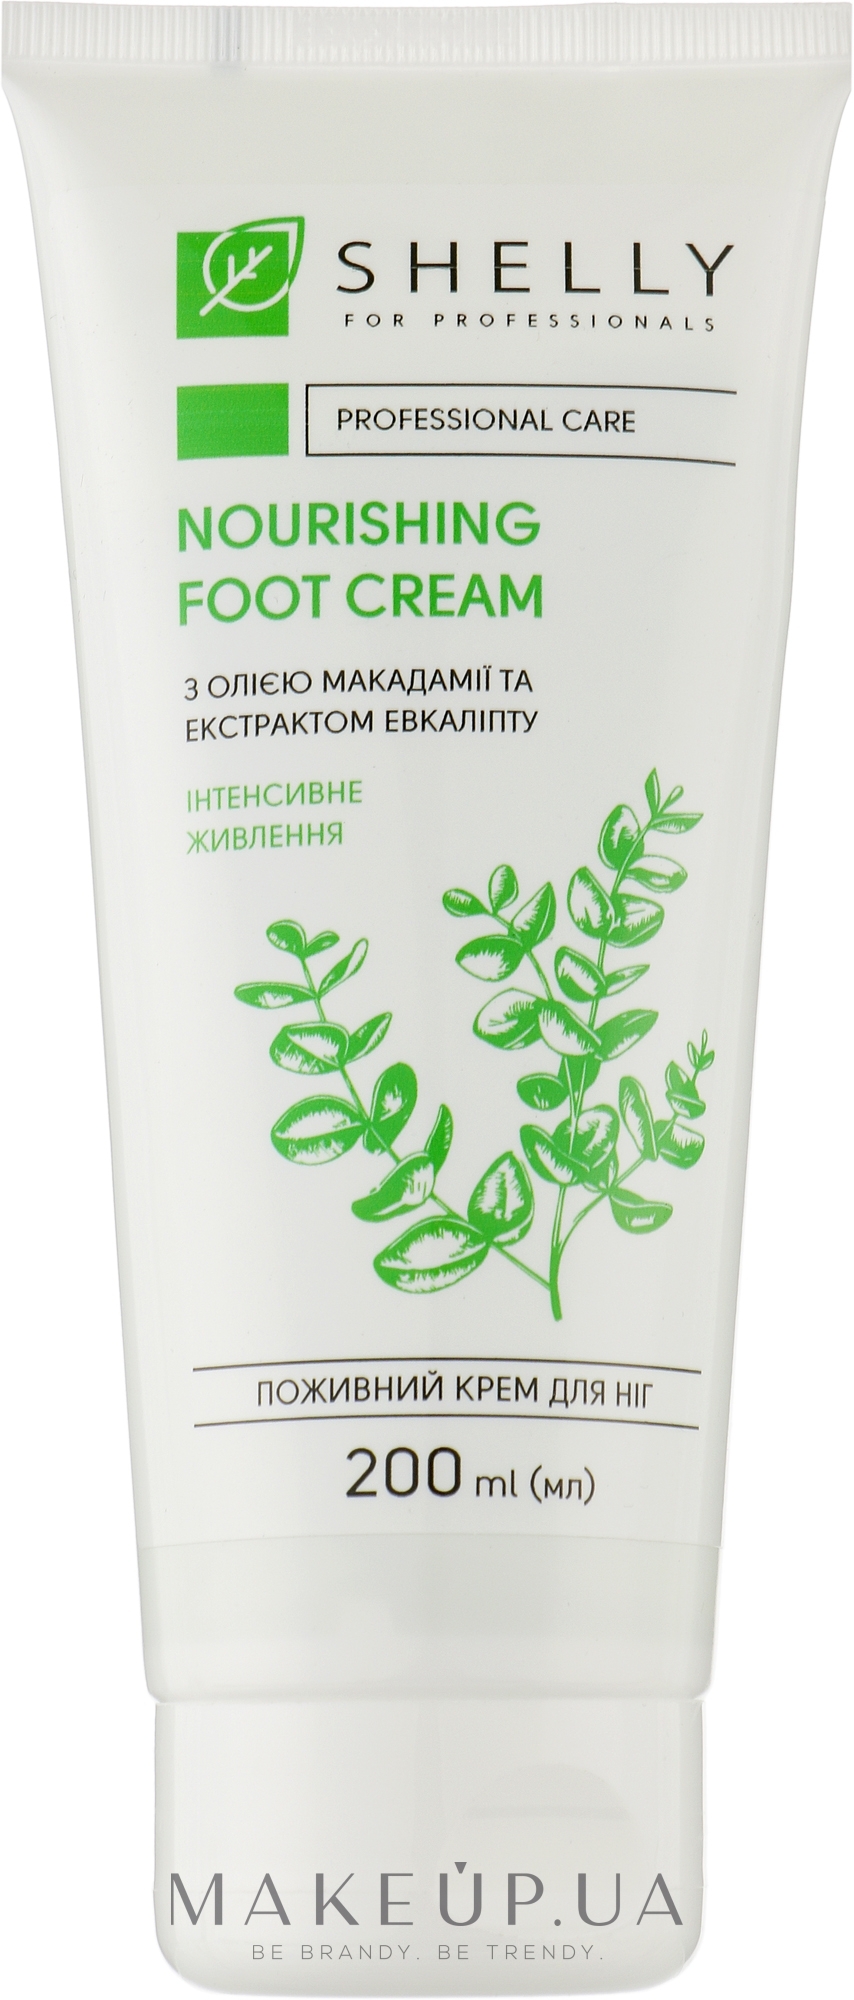 Питательный крем для ног с маслом макадамии и экстрактом эвкалипта - Shelly Nourishing Foot Cream — фото 200ml